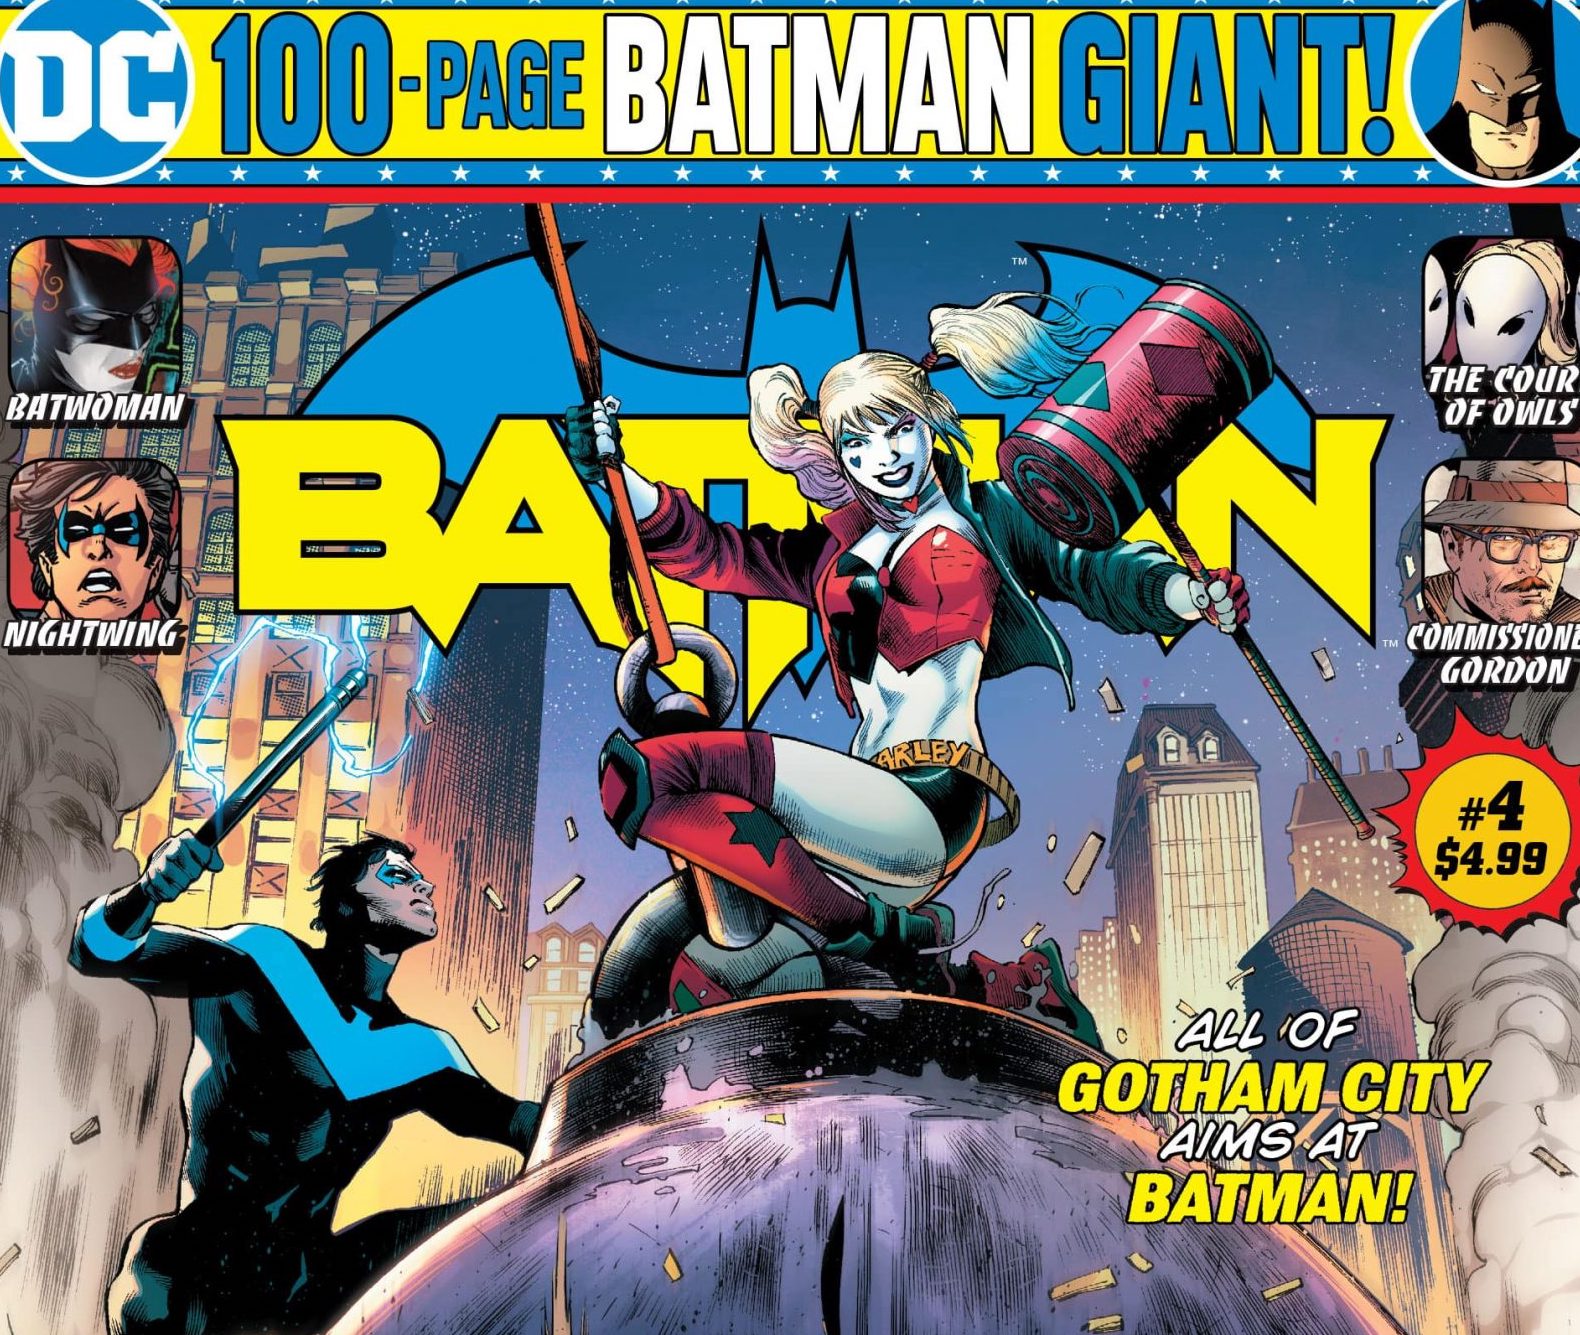 Batman Giant #4 Review